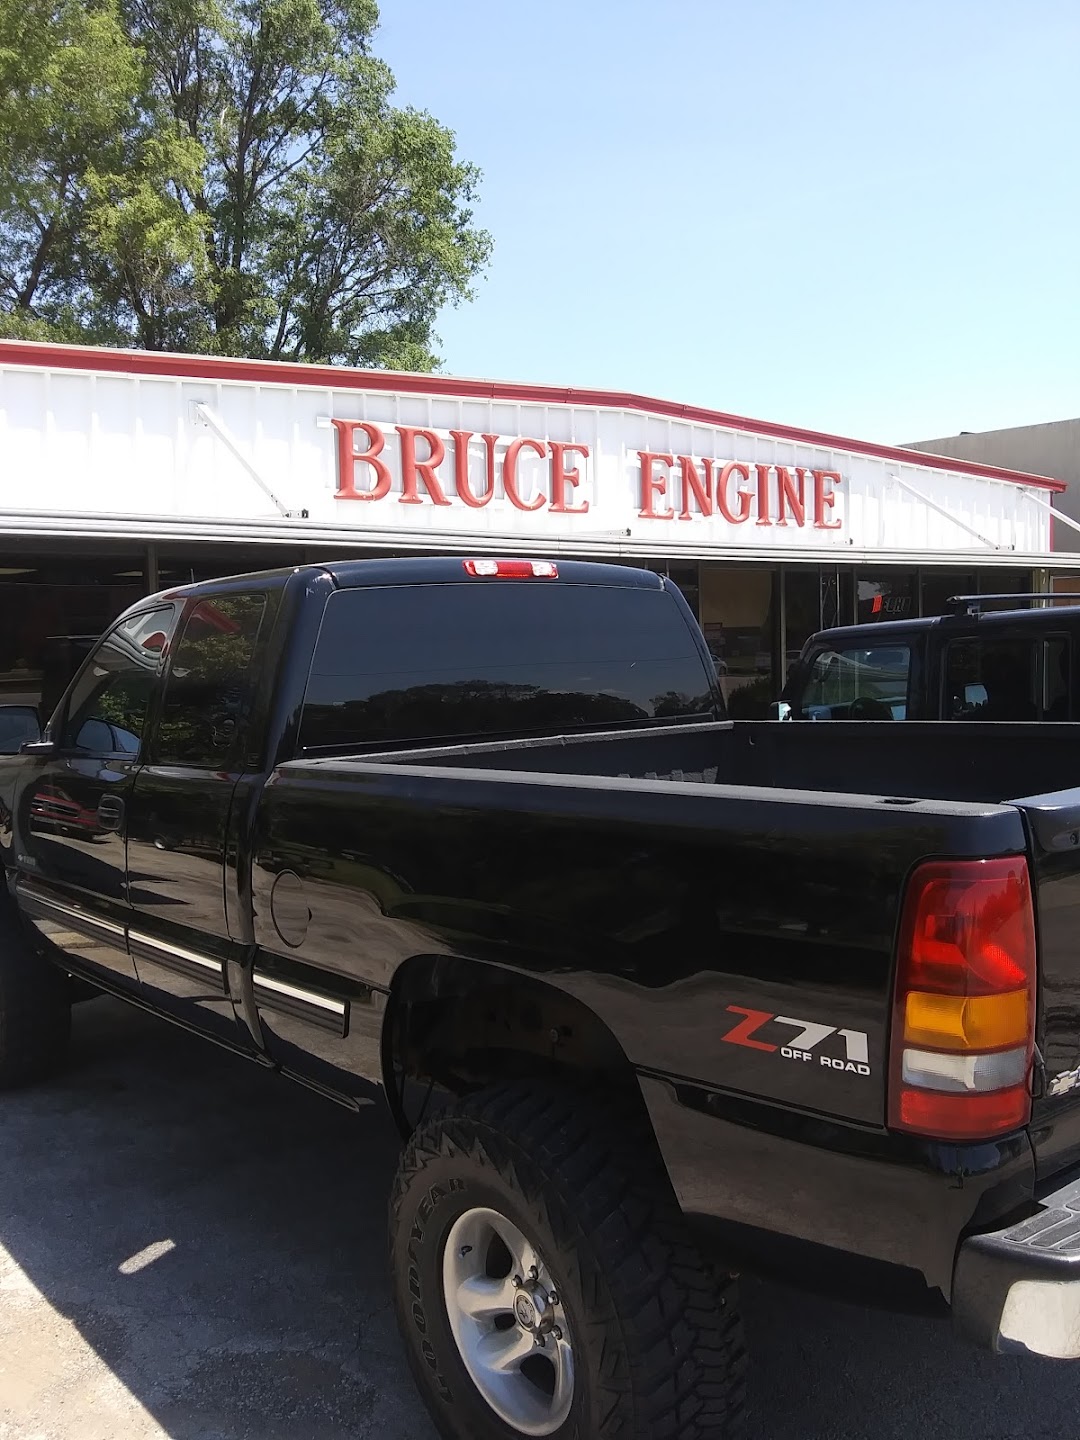 Bruce Engine